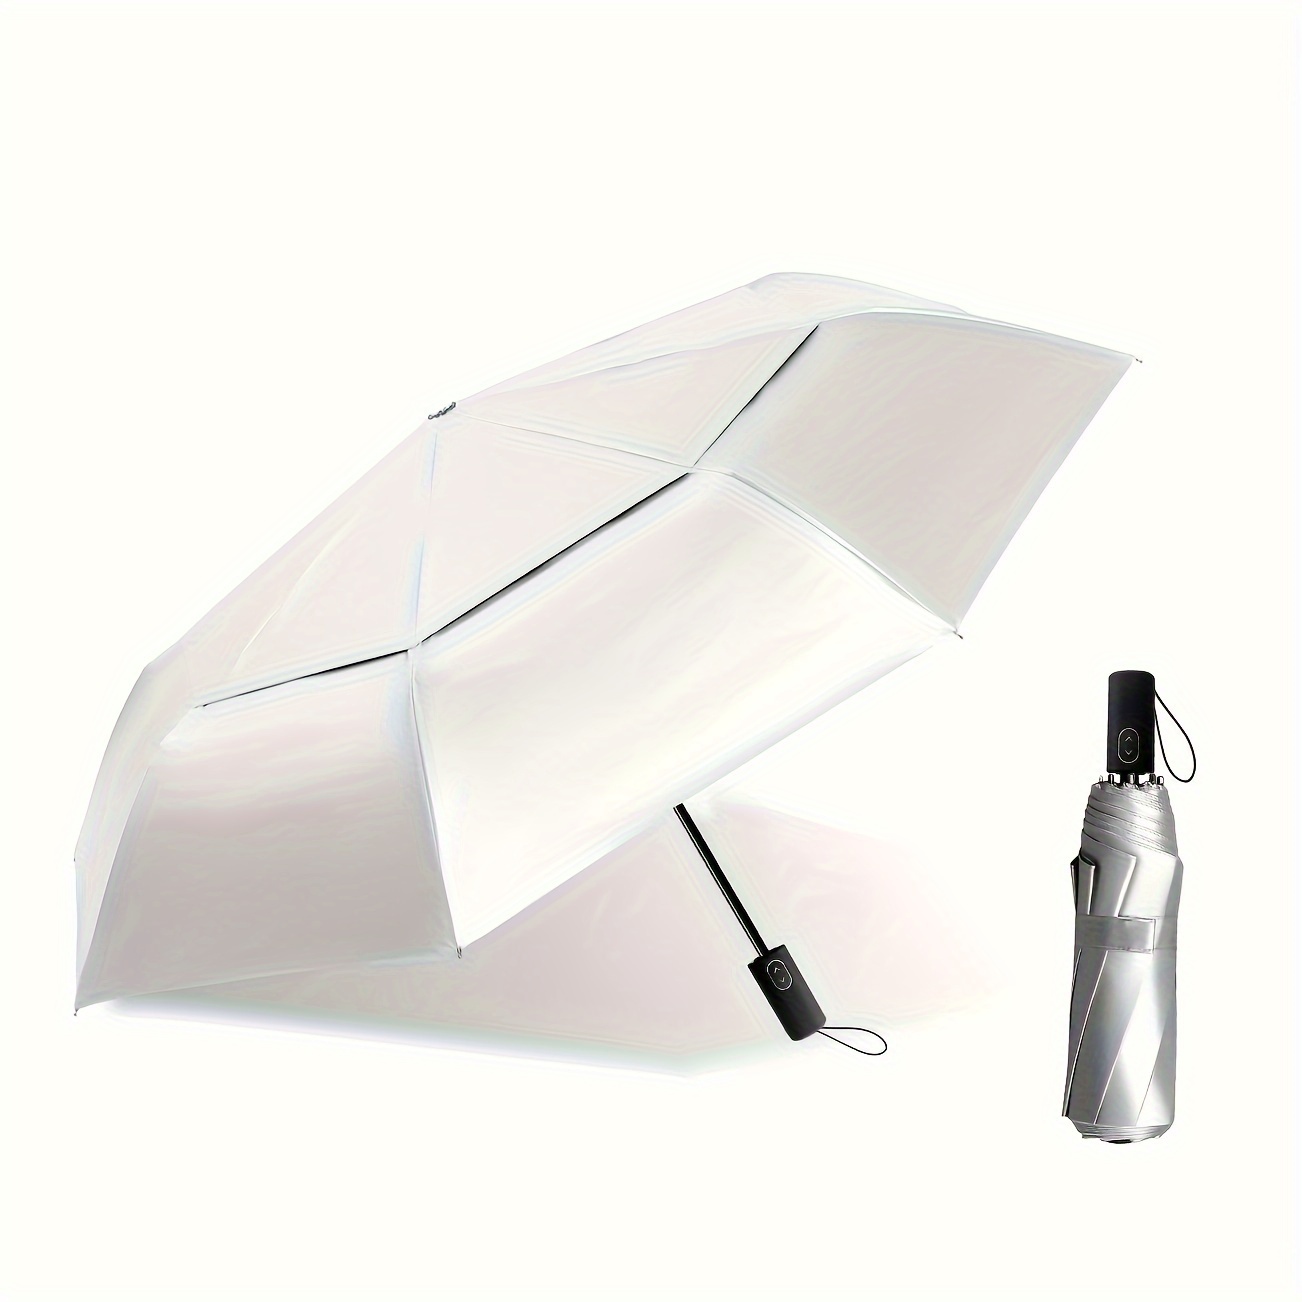 

Silver Ultralight Automatic Umbrella, 3 Fold Sun Umbrella, Portable Uv Protection Sun Umbrella, 8 Ribs Double Canopy Windproof Umbrella